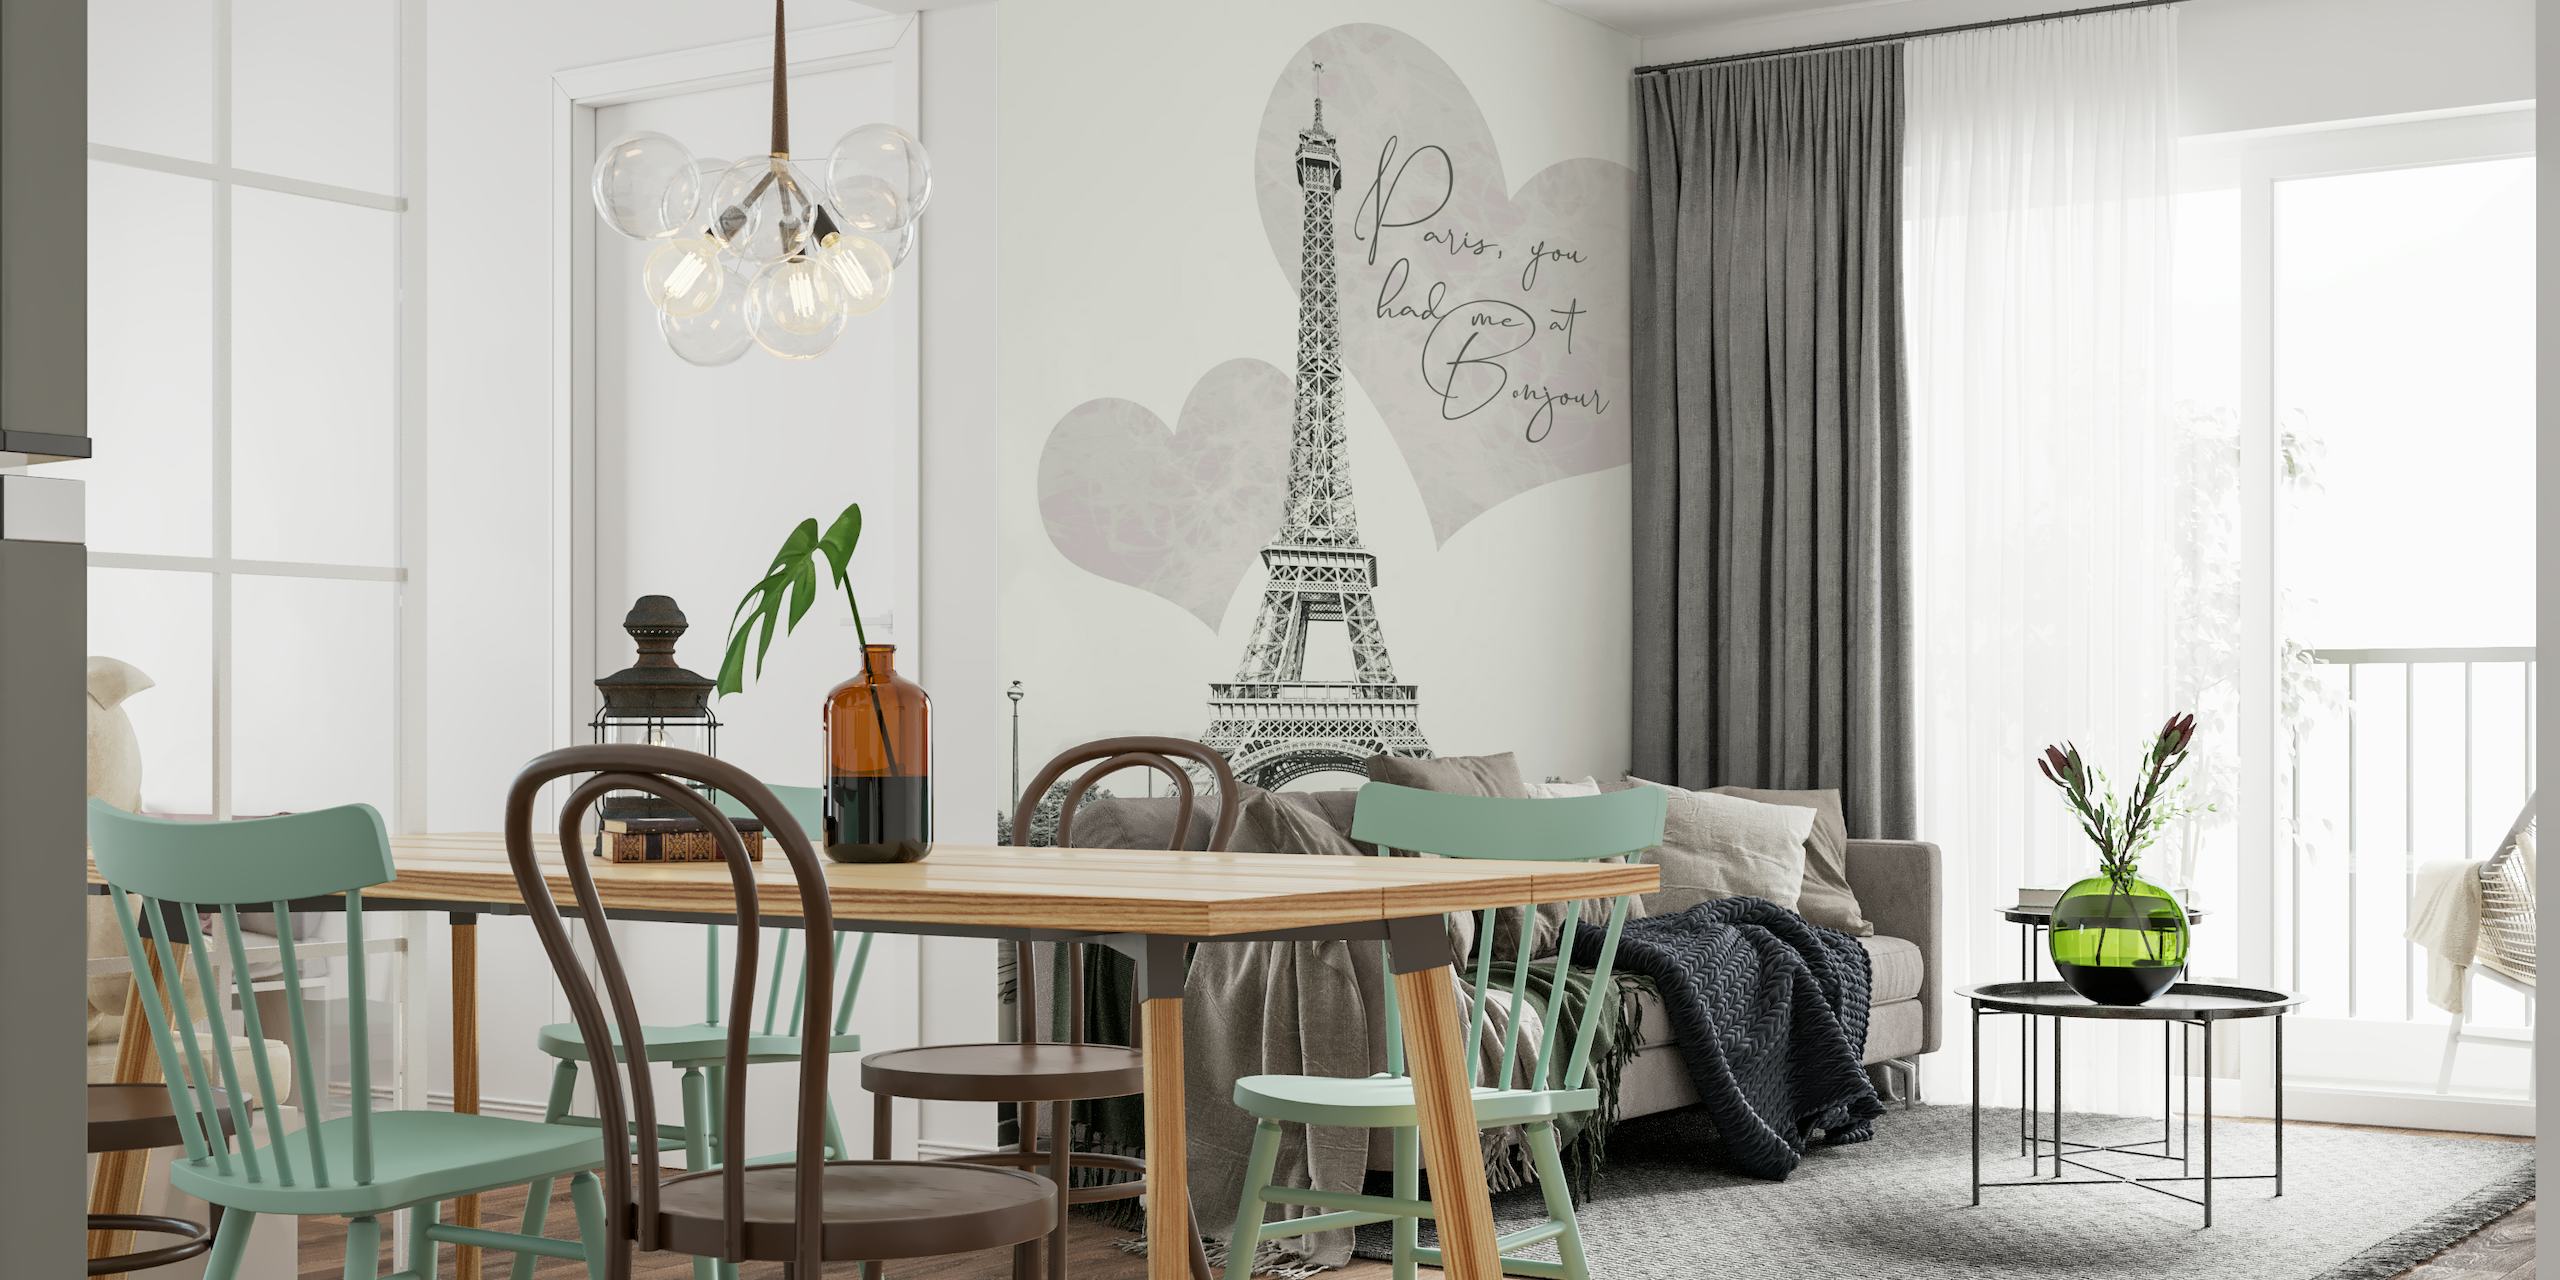 Tour Eiffel avec des formes de coeur romantiques et une citation murale "Paris, tu m'as eu à BONJOUR"